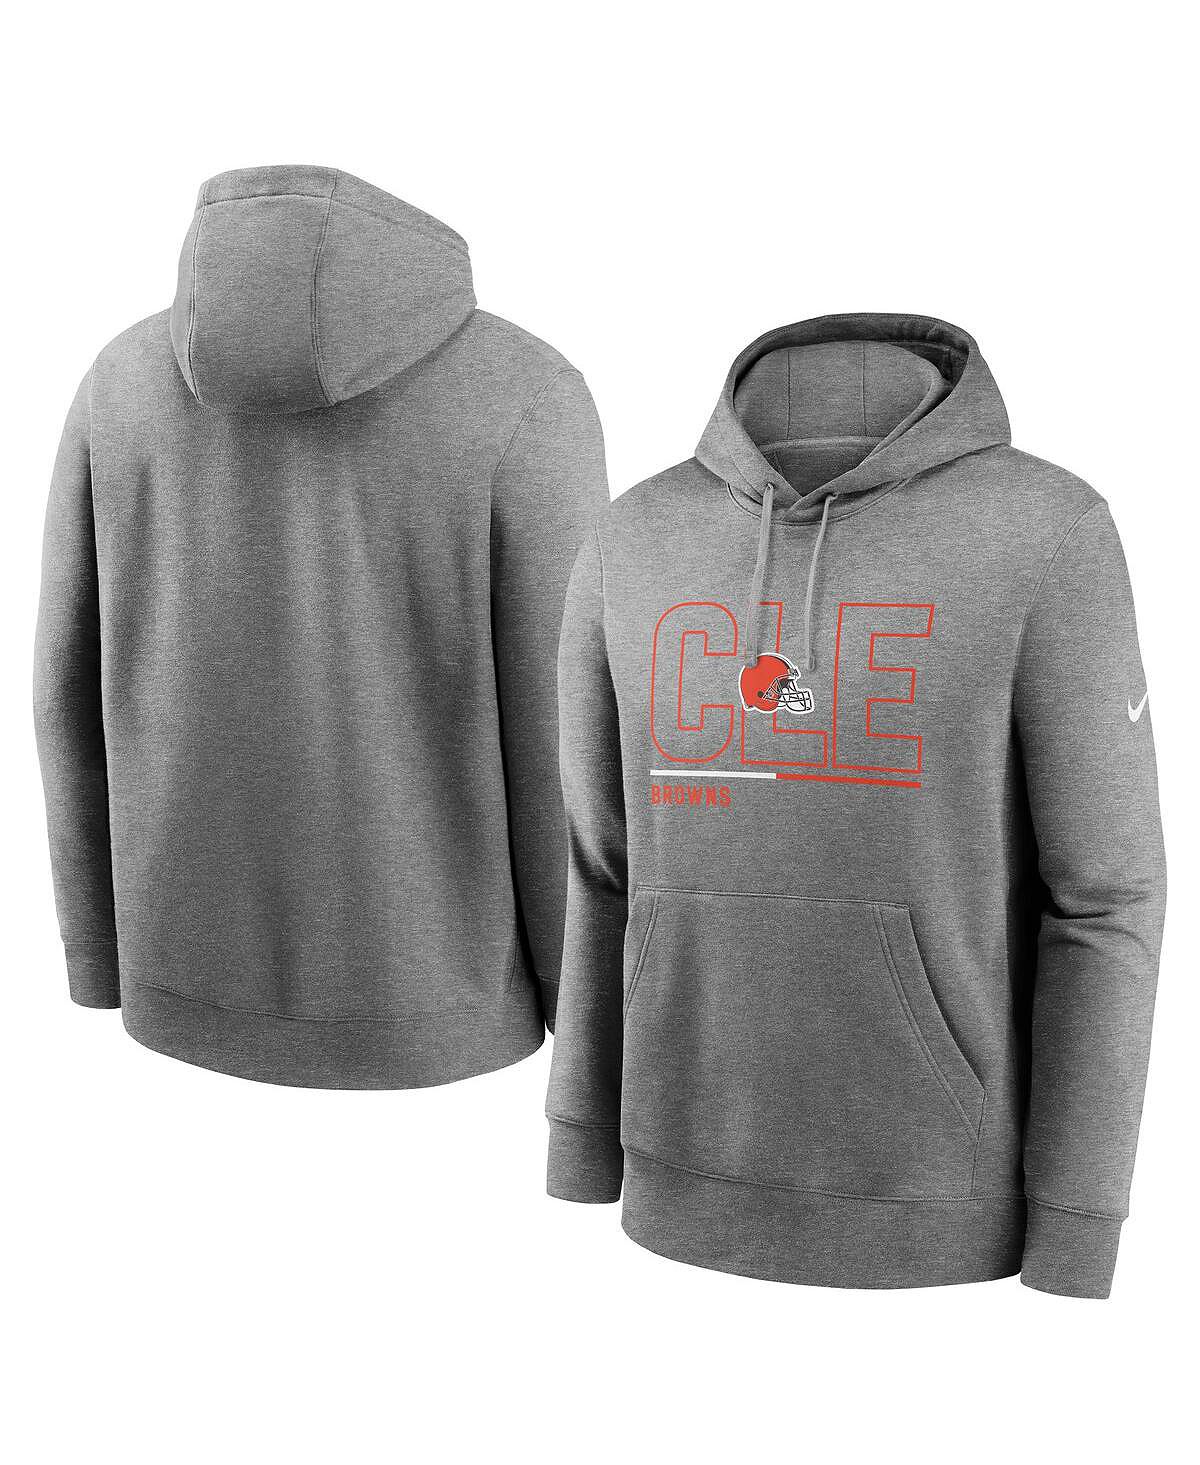 цена Мужской флисовый пуловер с капюшоном Cleveland Browns City Code Club серого цвета Nike